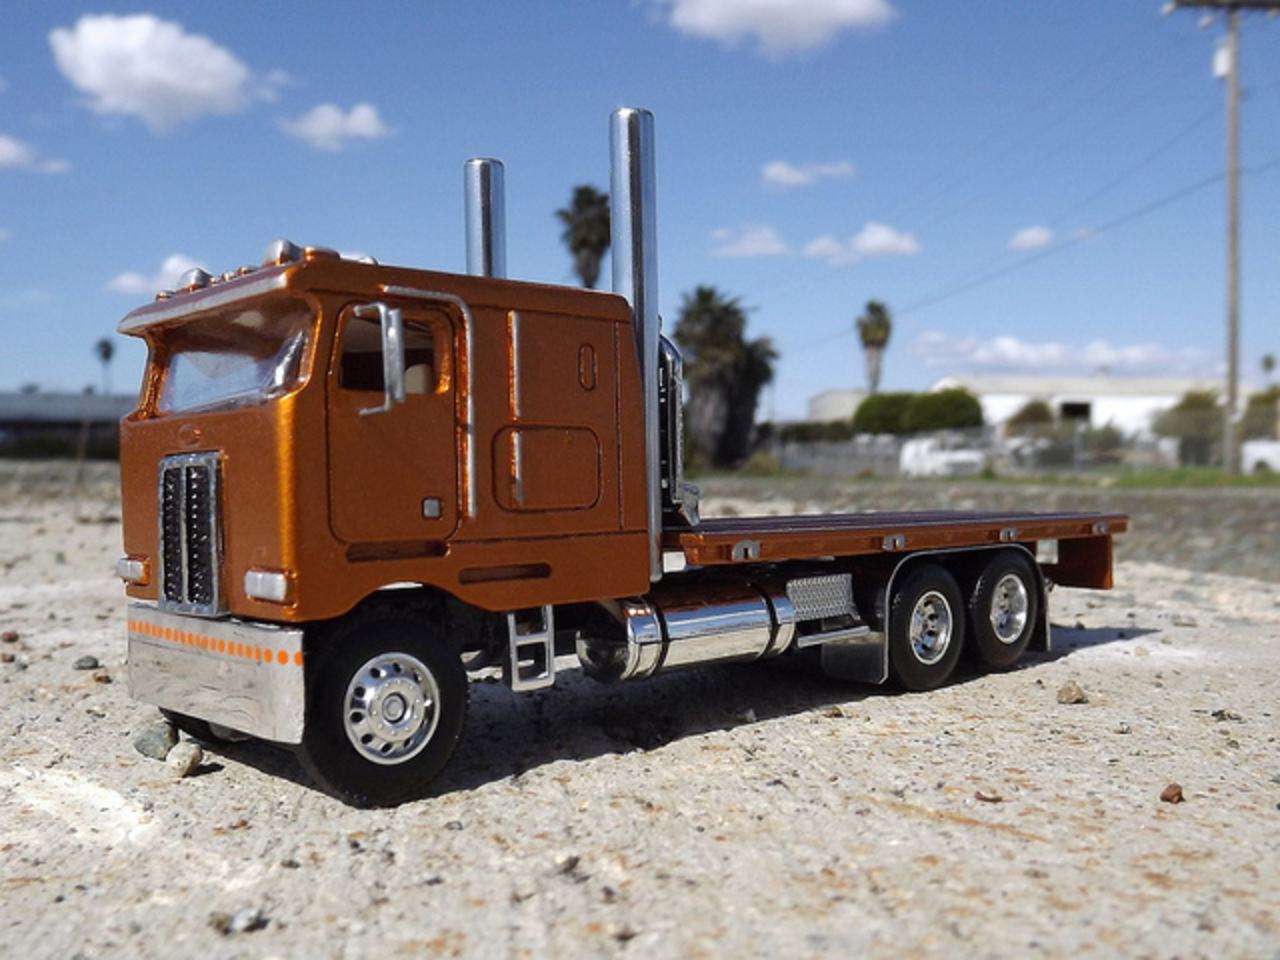 Flickr: The Heavy Hauler Truck Model Pool